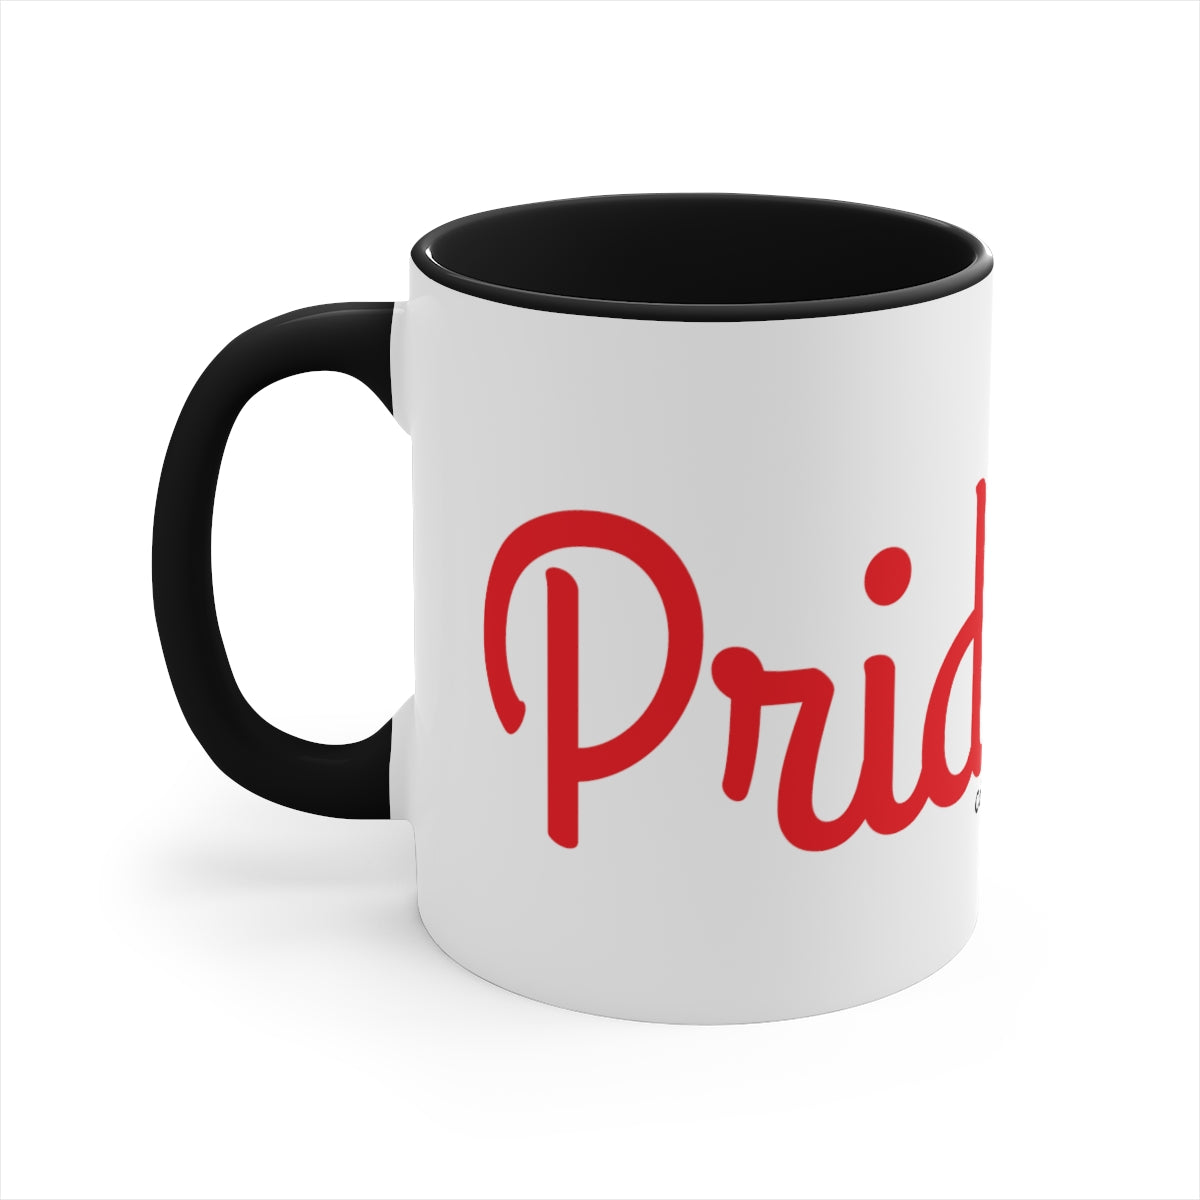 Pride of Lion Coffee Mug, 11oz